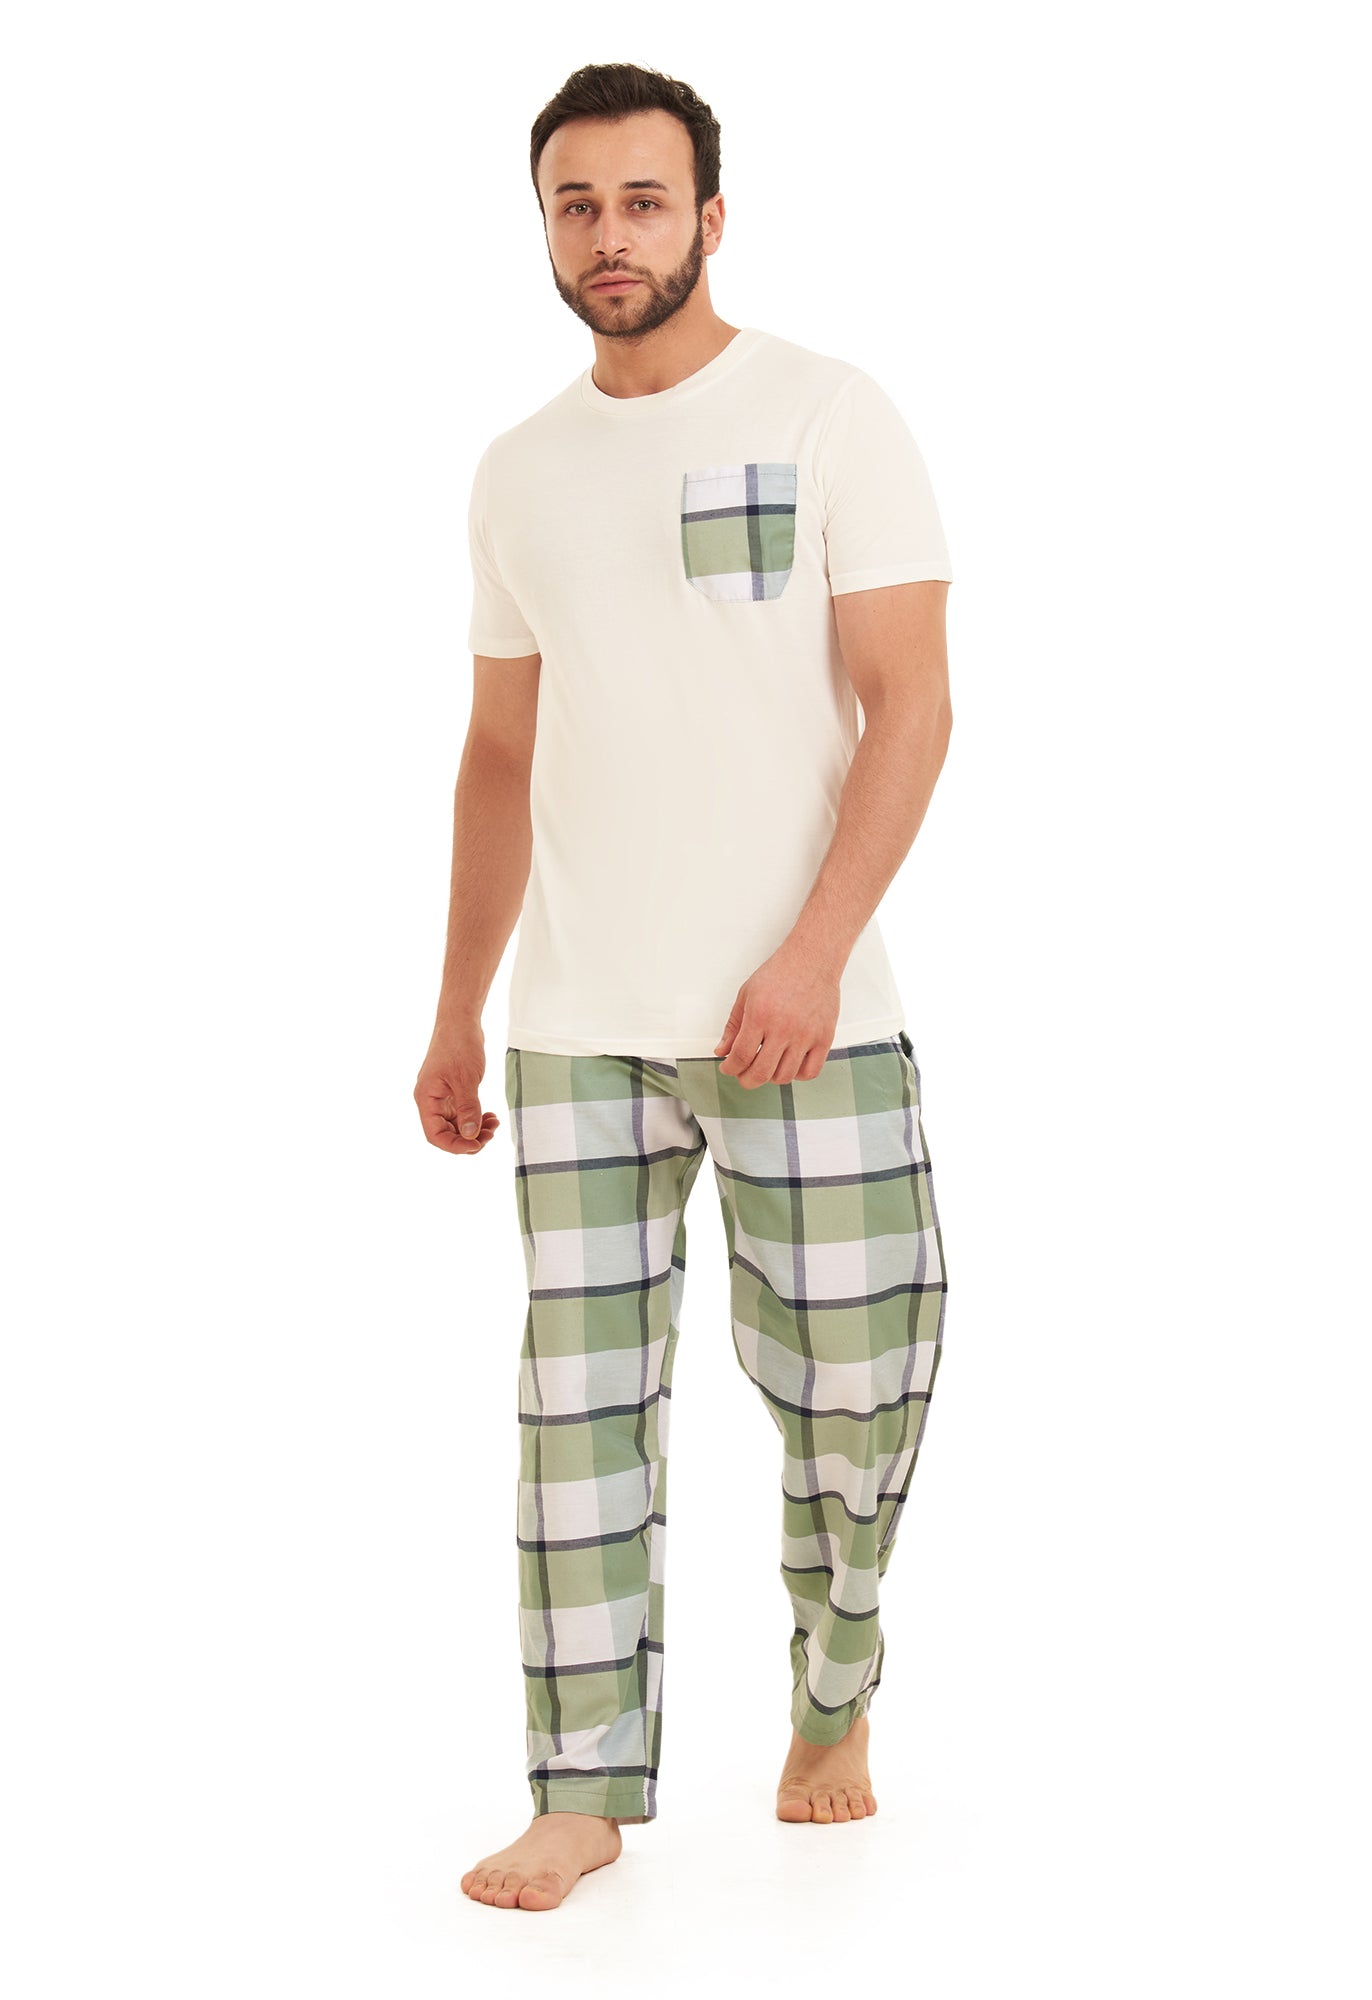 Bustaj Checkered pajama